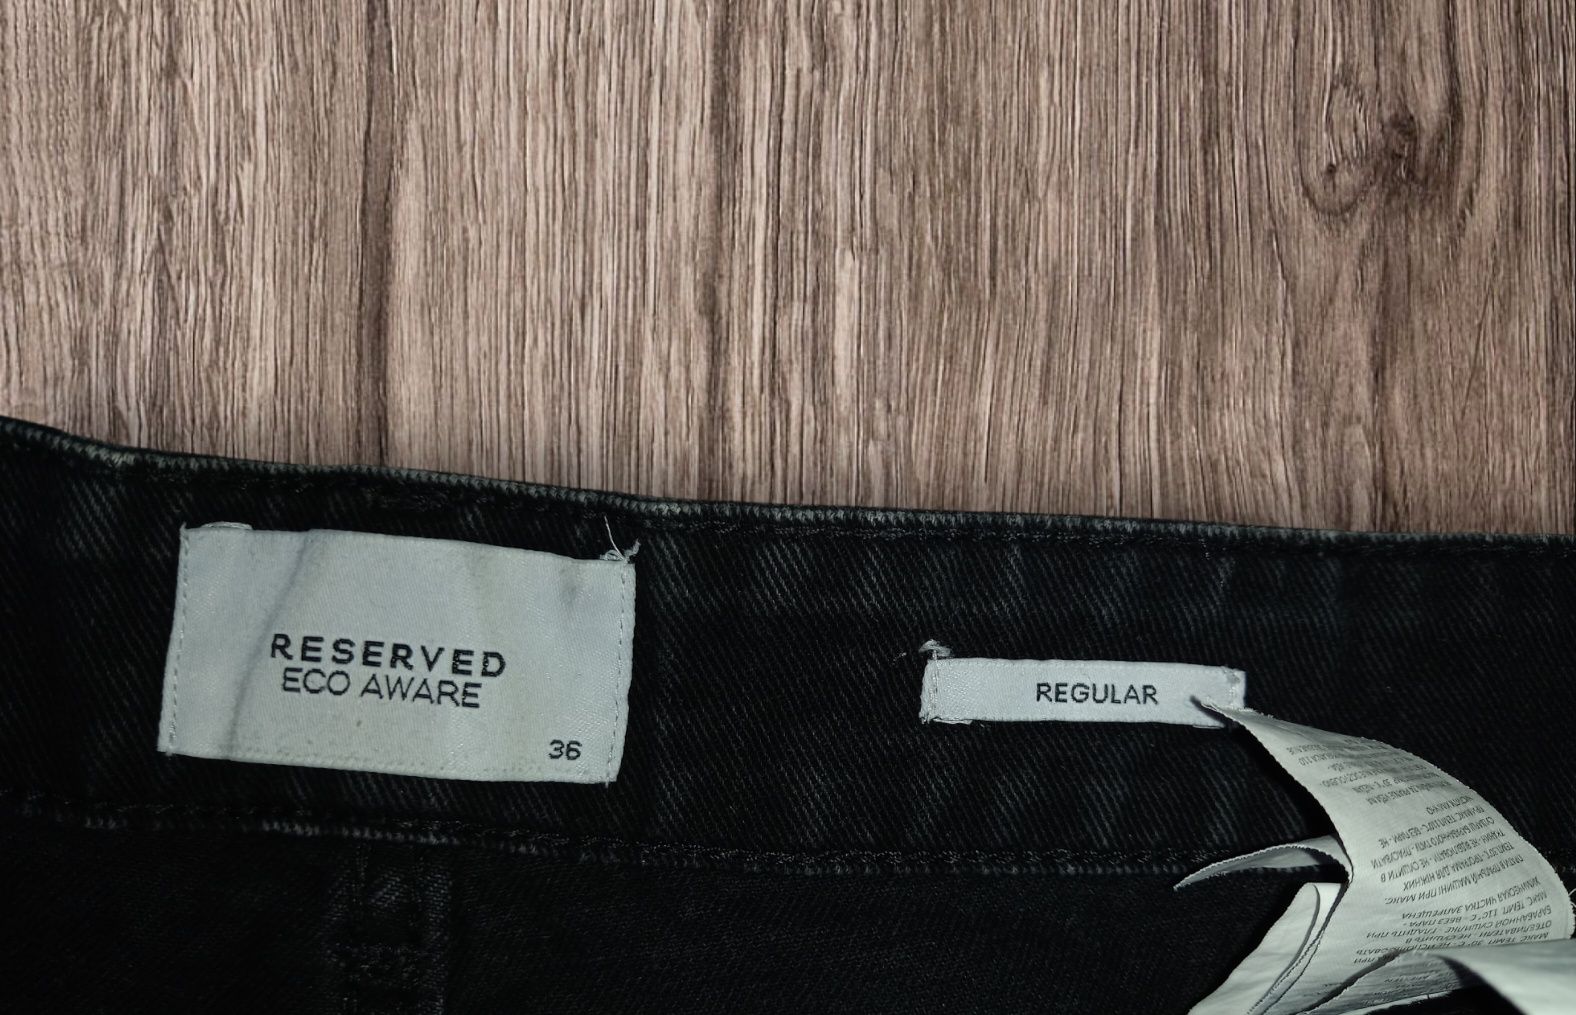 Шорты черные джинсовые  regular reserved 36(46) размер